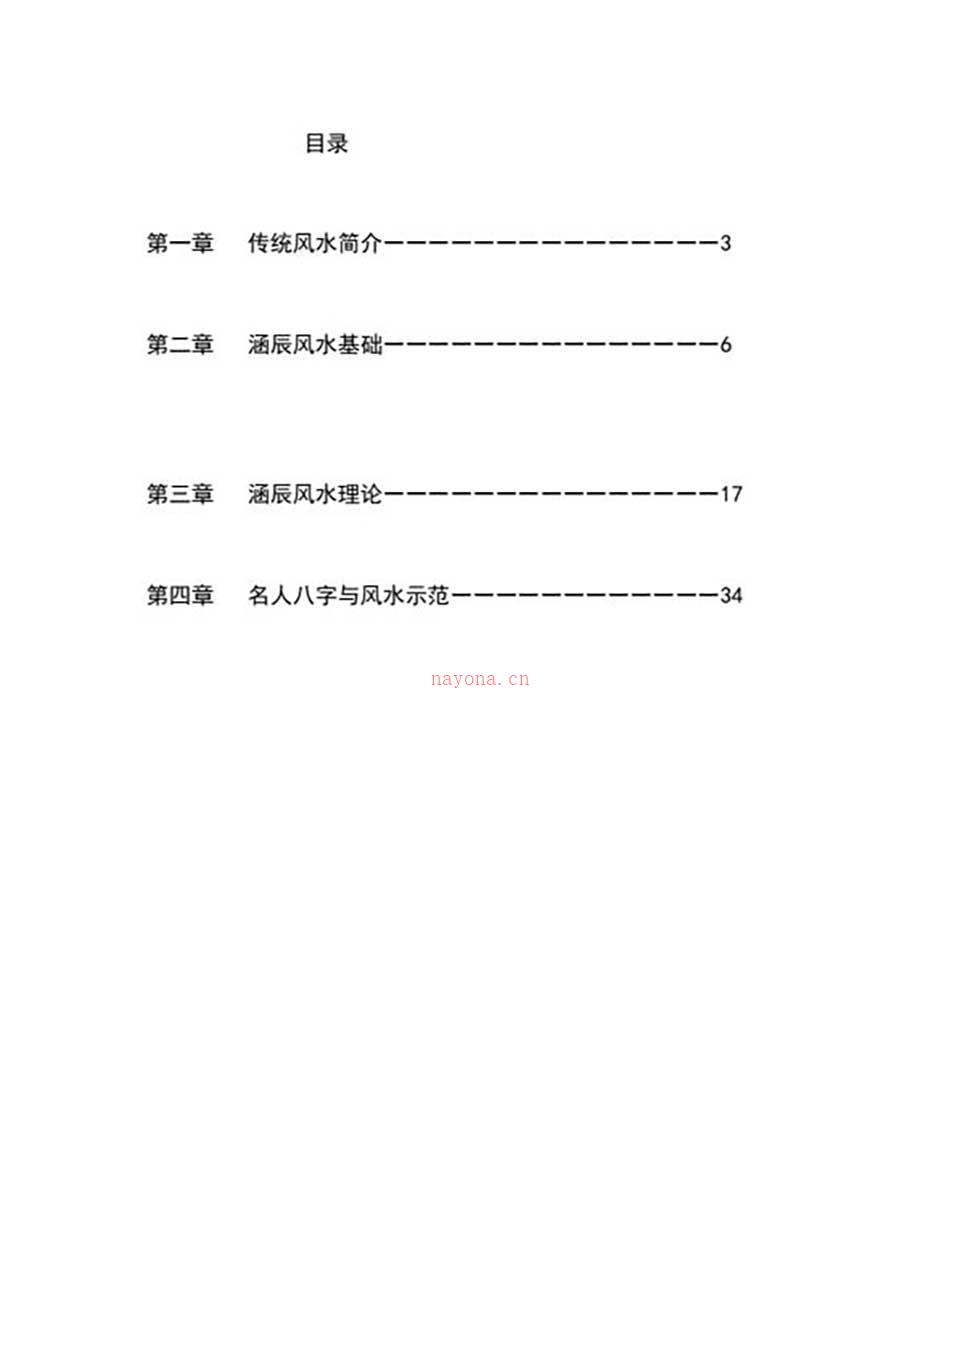 李涵辰-风水班理论讲义大纲【经典】44页.pdf 百度网盘资源